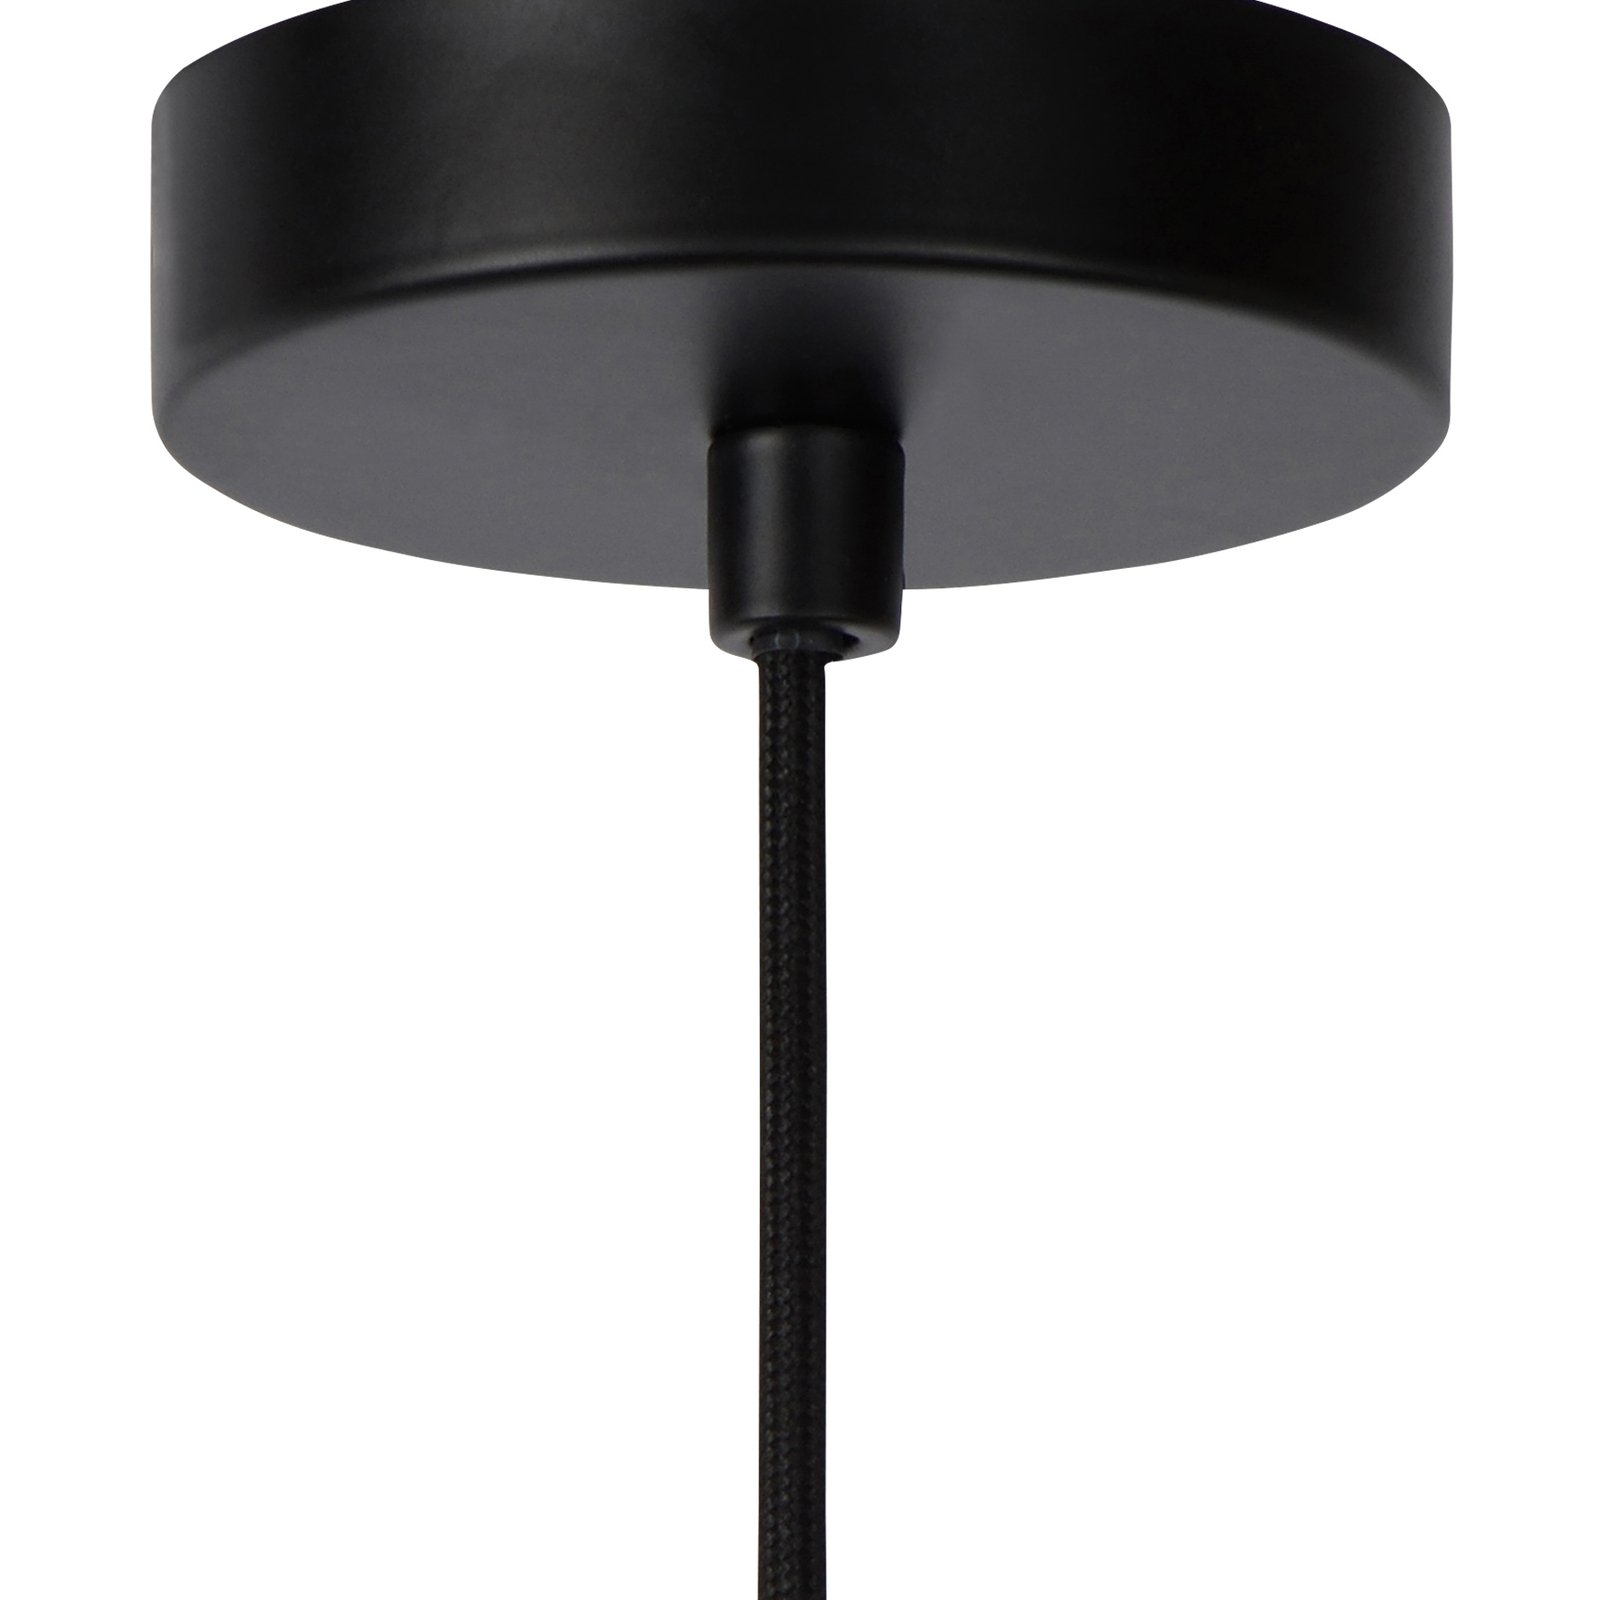 Julius hanglamp, 1-lamp, rookgrijs, Ø 28 cm